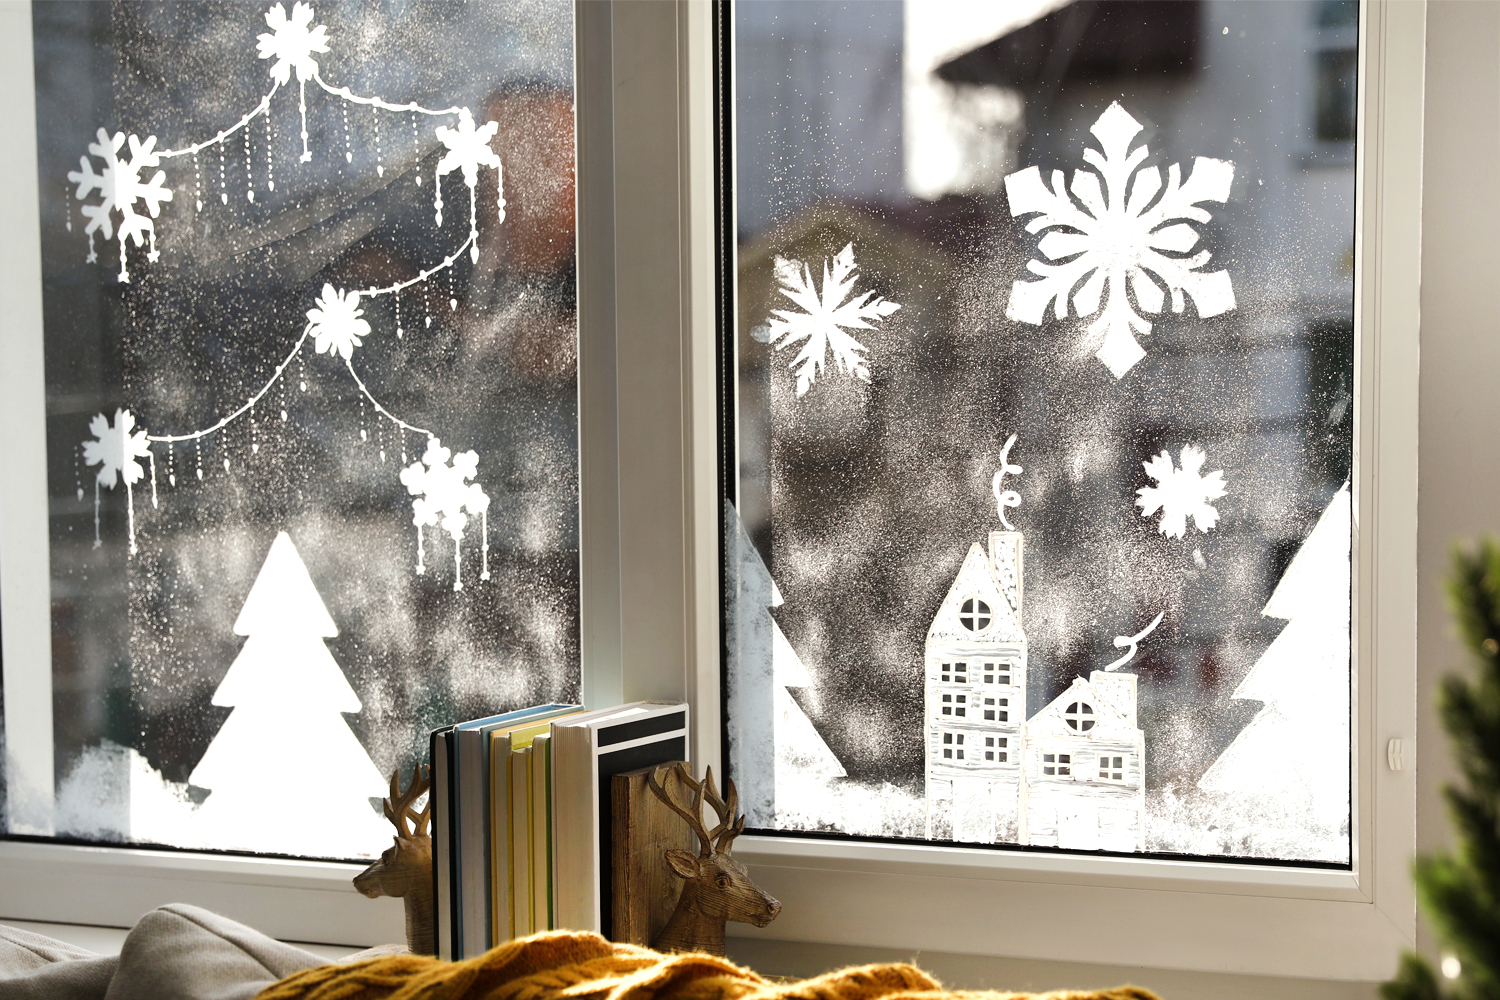 Décorer ses vitres pour Noël sans bombe à neige